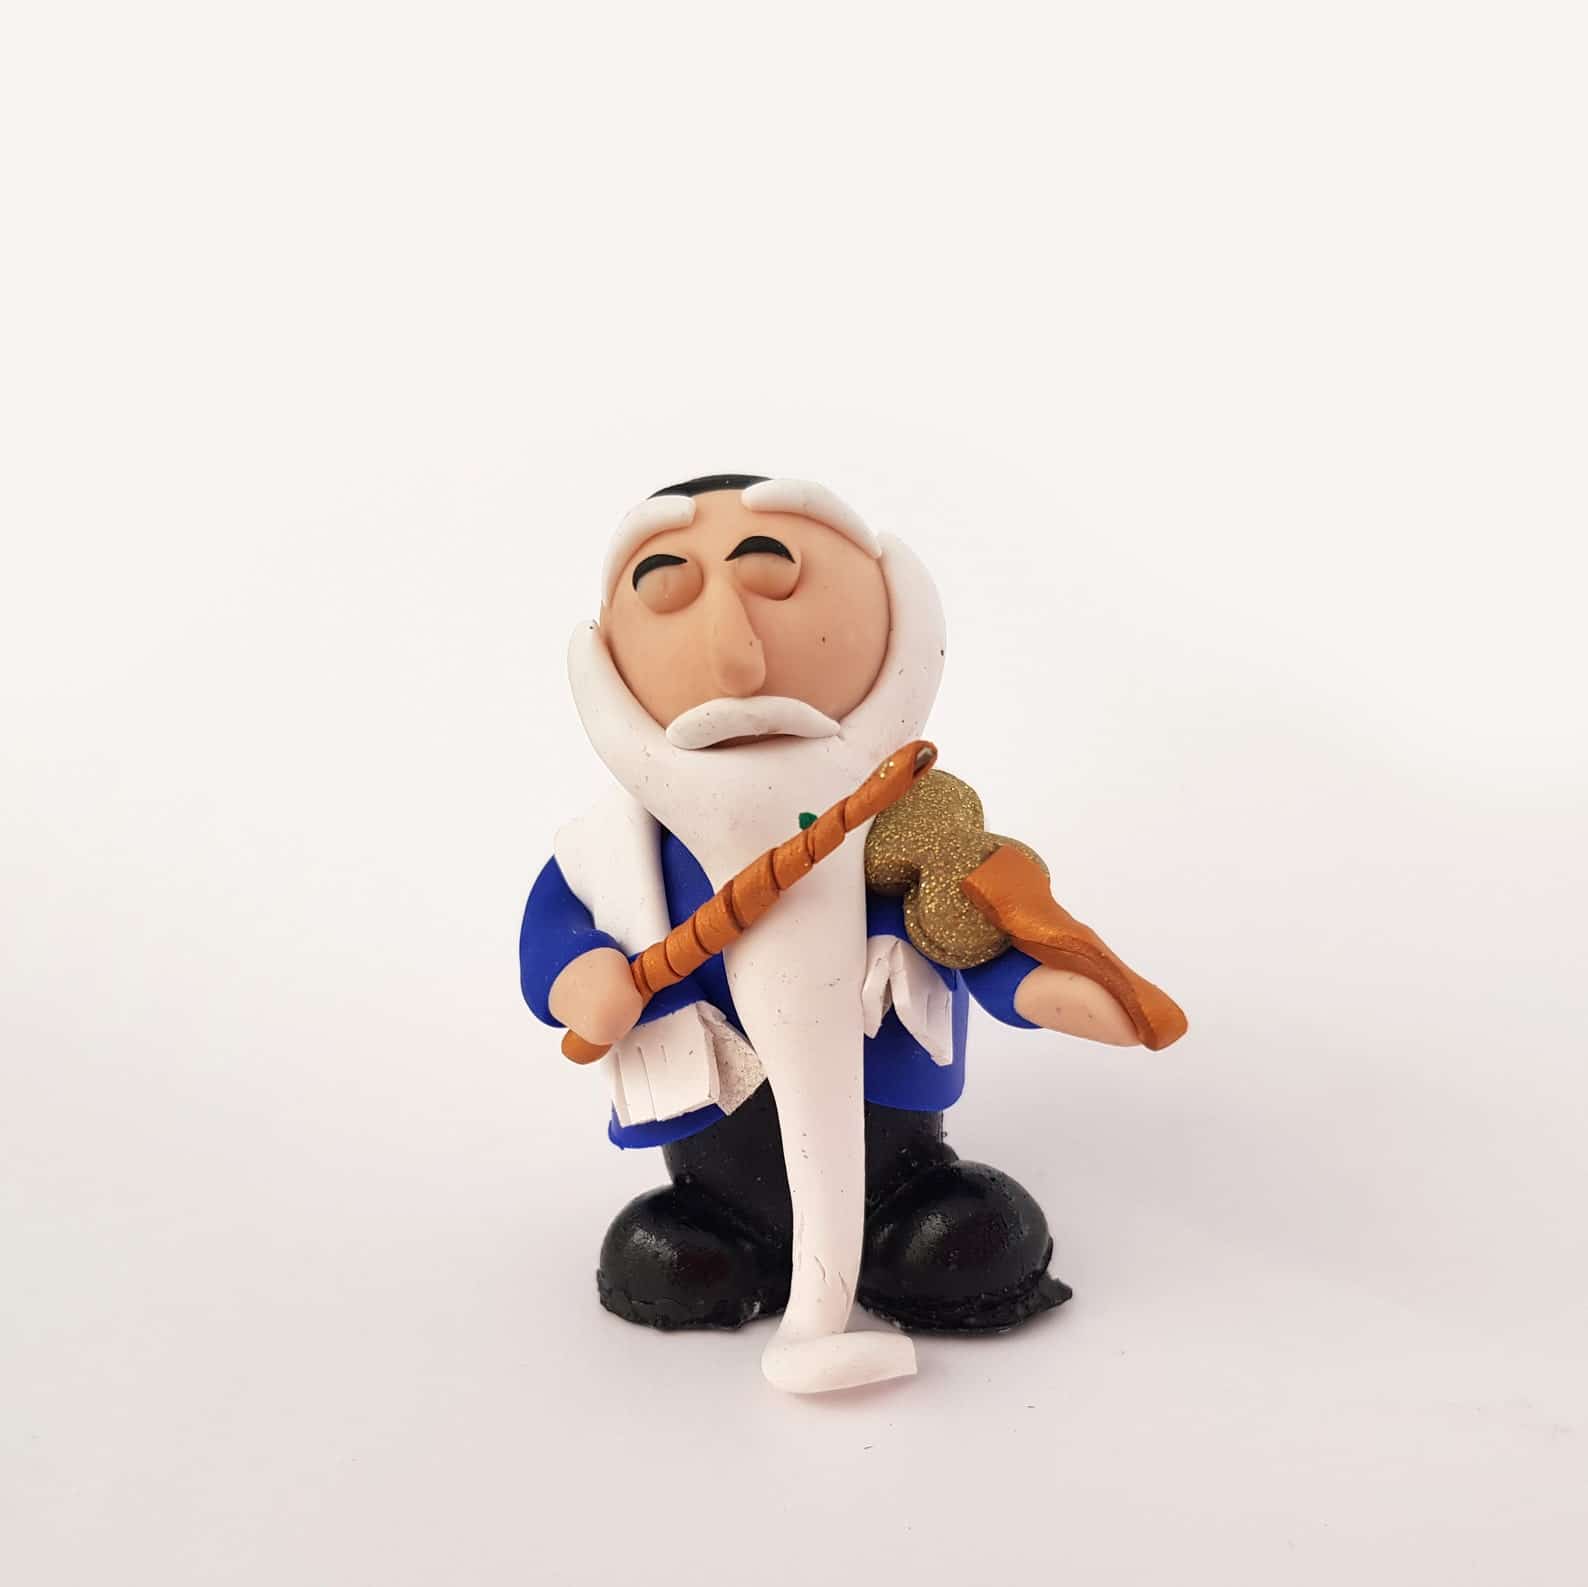 Polymer Clay Rabbi doll with violin